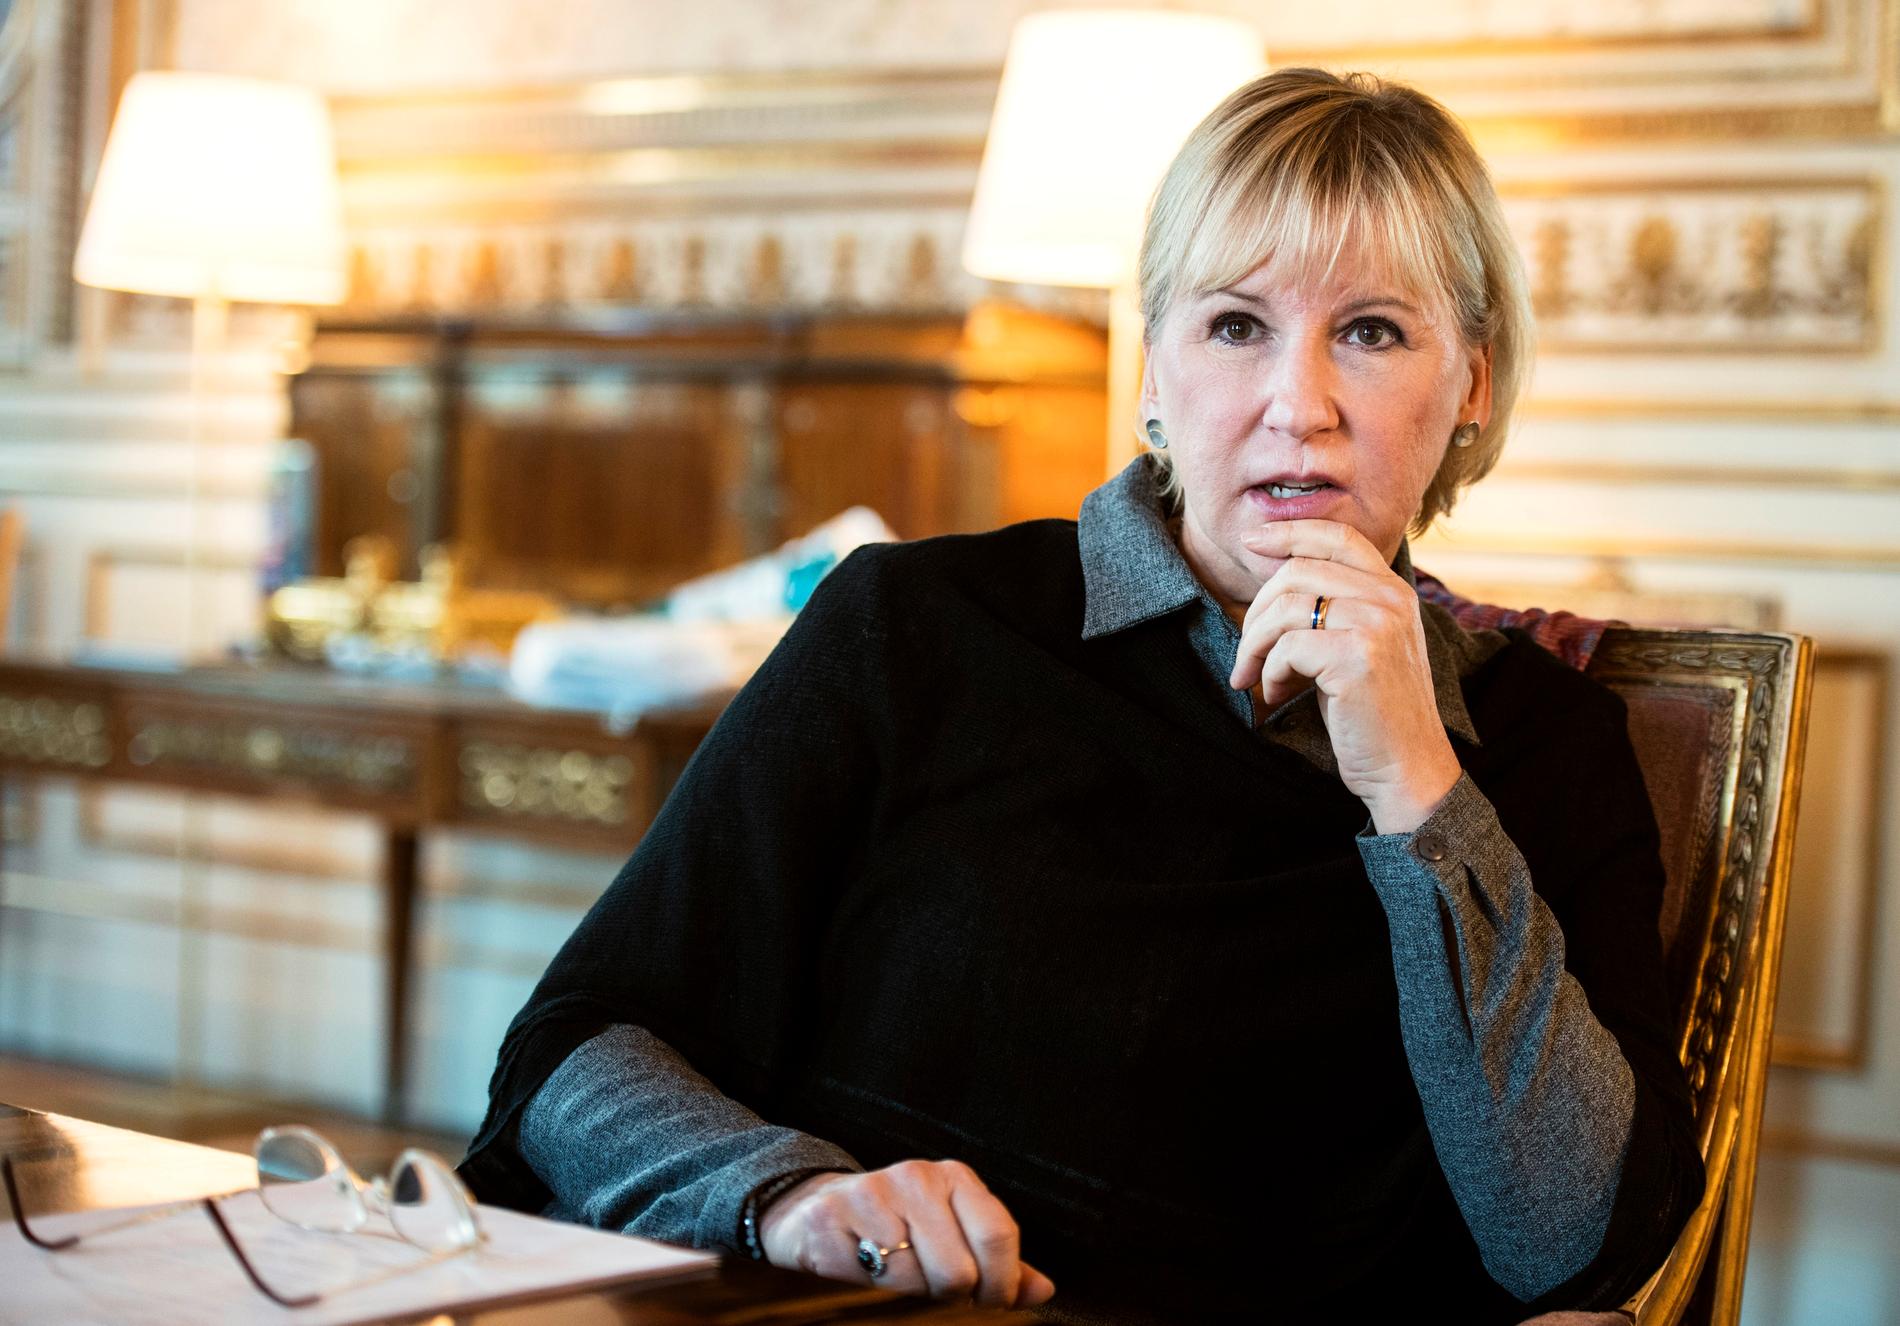 Sveriges utrikesminister Margot Wallström säger sig vara djupt bekymrad över beslutet.